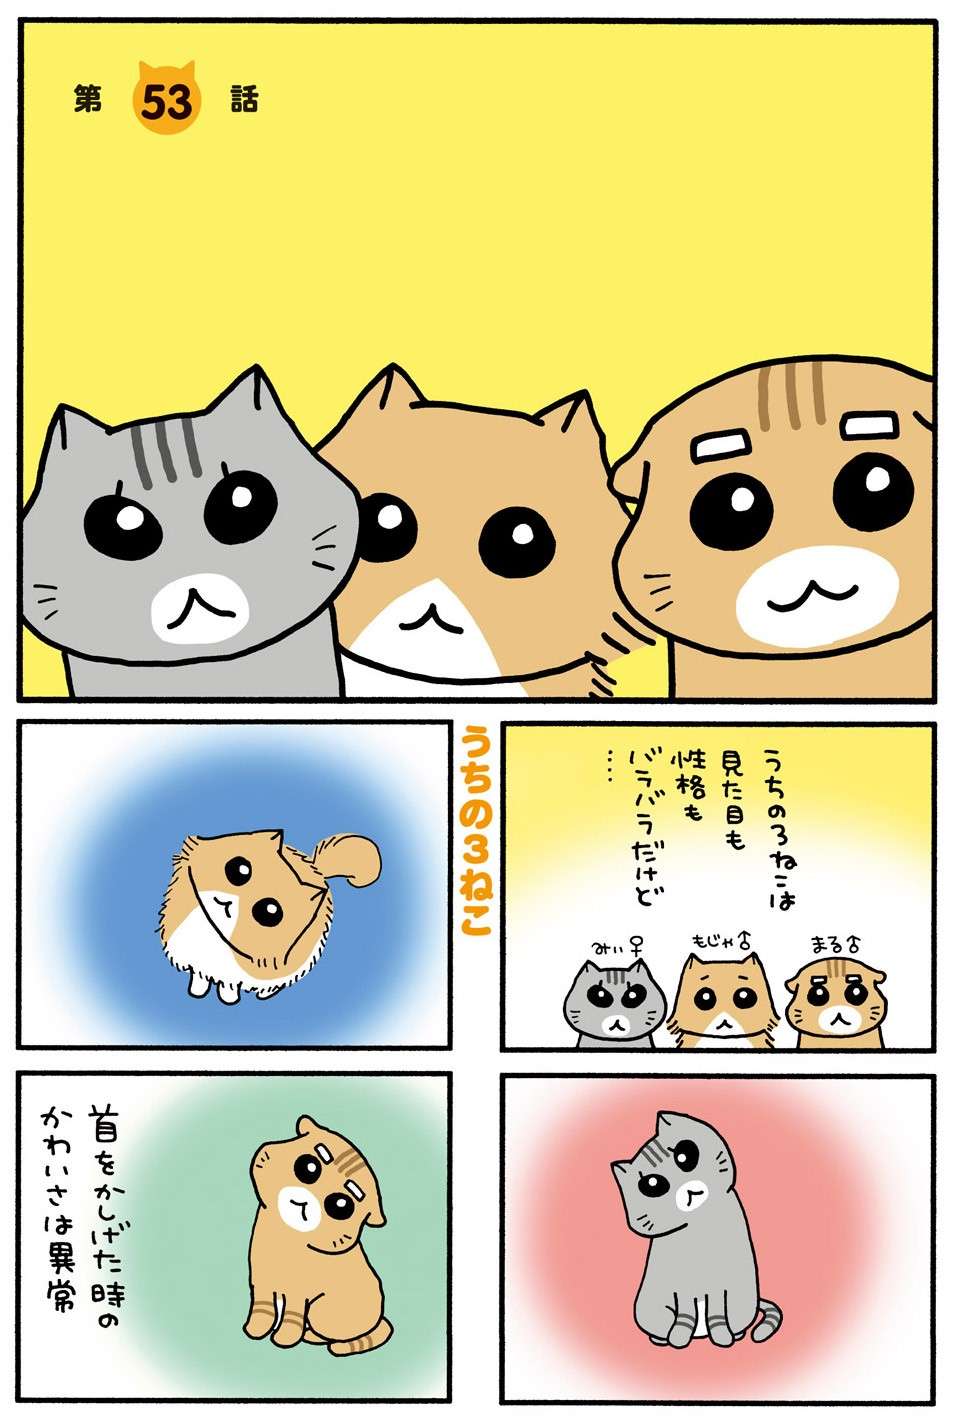 「にゃーにゃー」仕事中、ずっと横で鳴き続ける愛猫。当然、こうなりますね／うちの3ねこ 3 uchinosanneko3_029.jpg